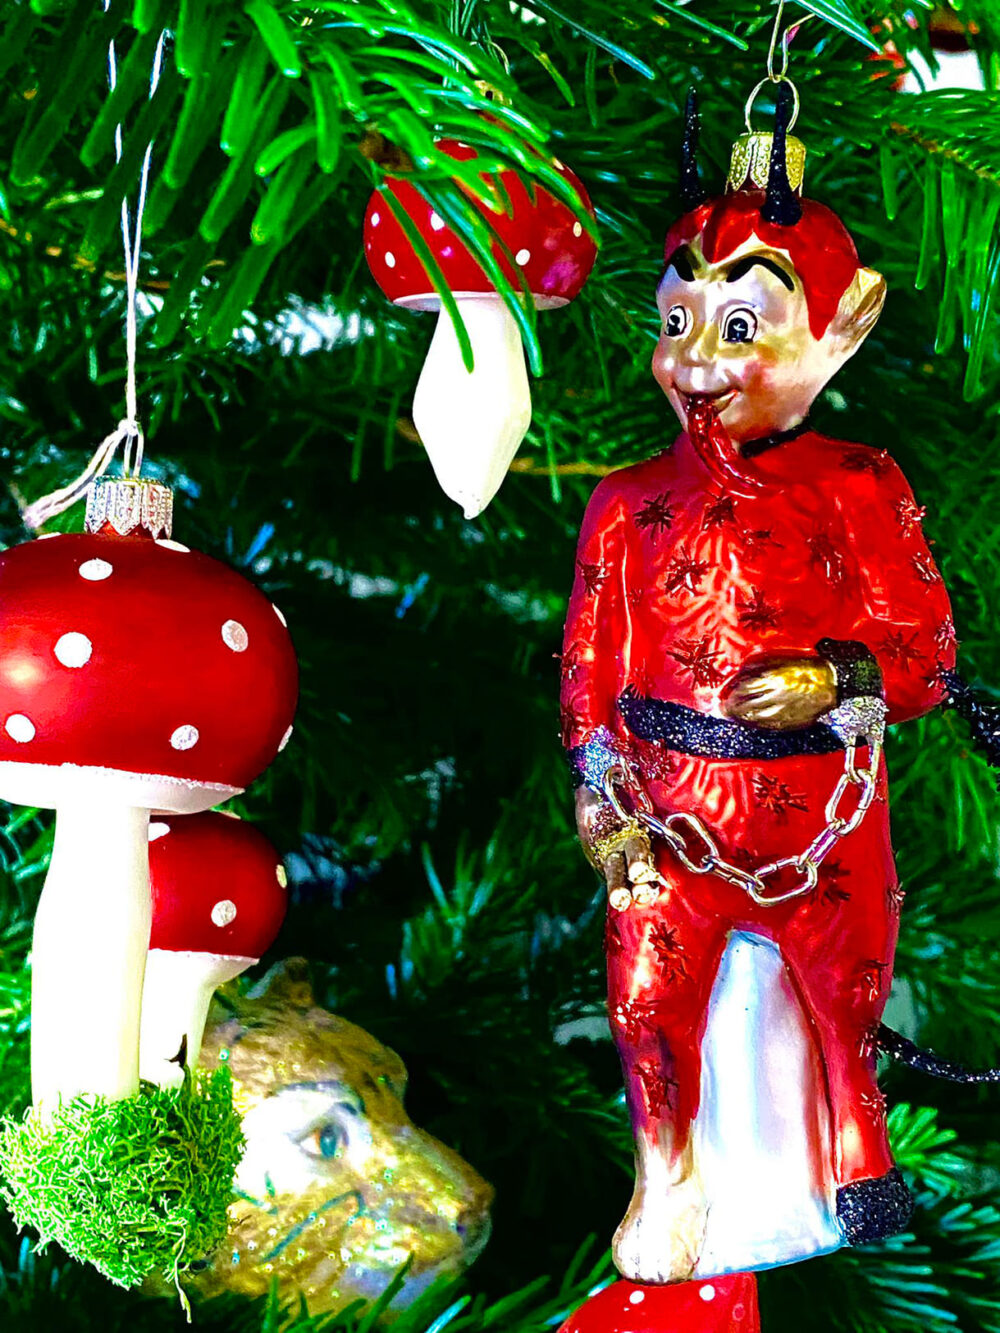 Detailfoto vom Weihnachtsbaum von Michael Stavarič im Vorjahr